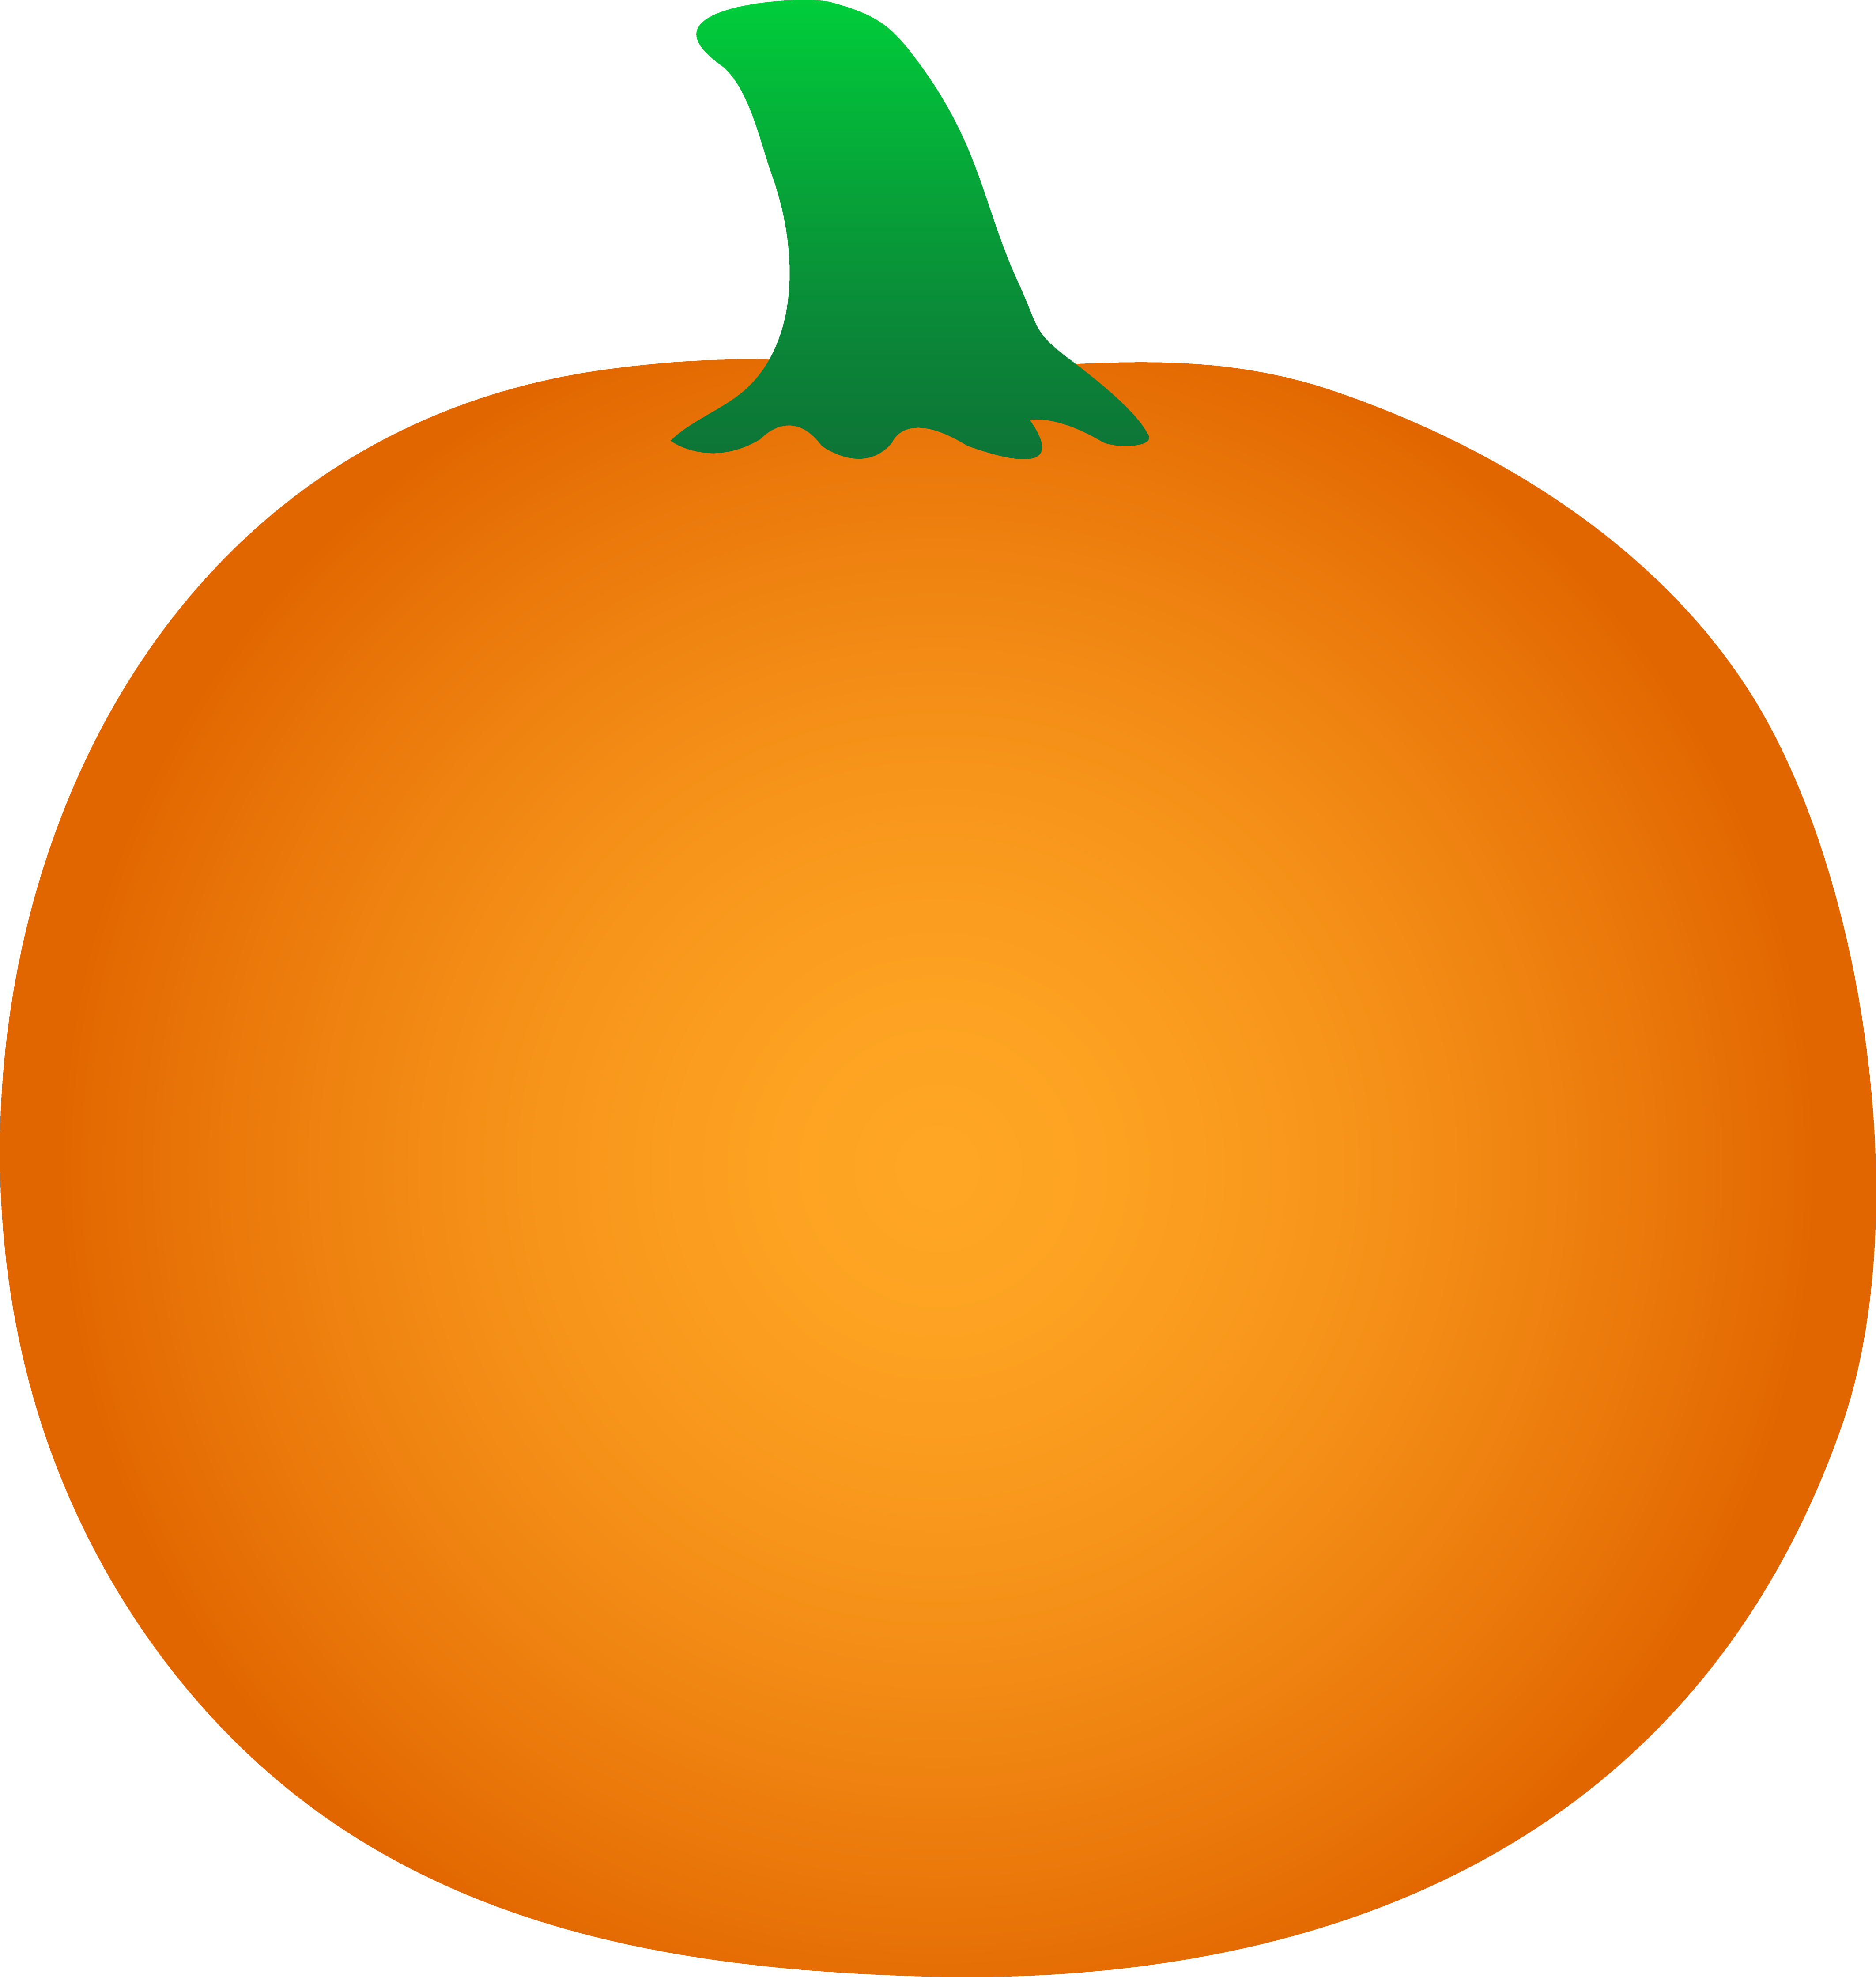 Round Orange Halloween Pumpkin - Free Clip Art